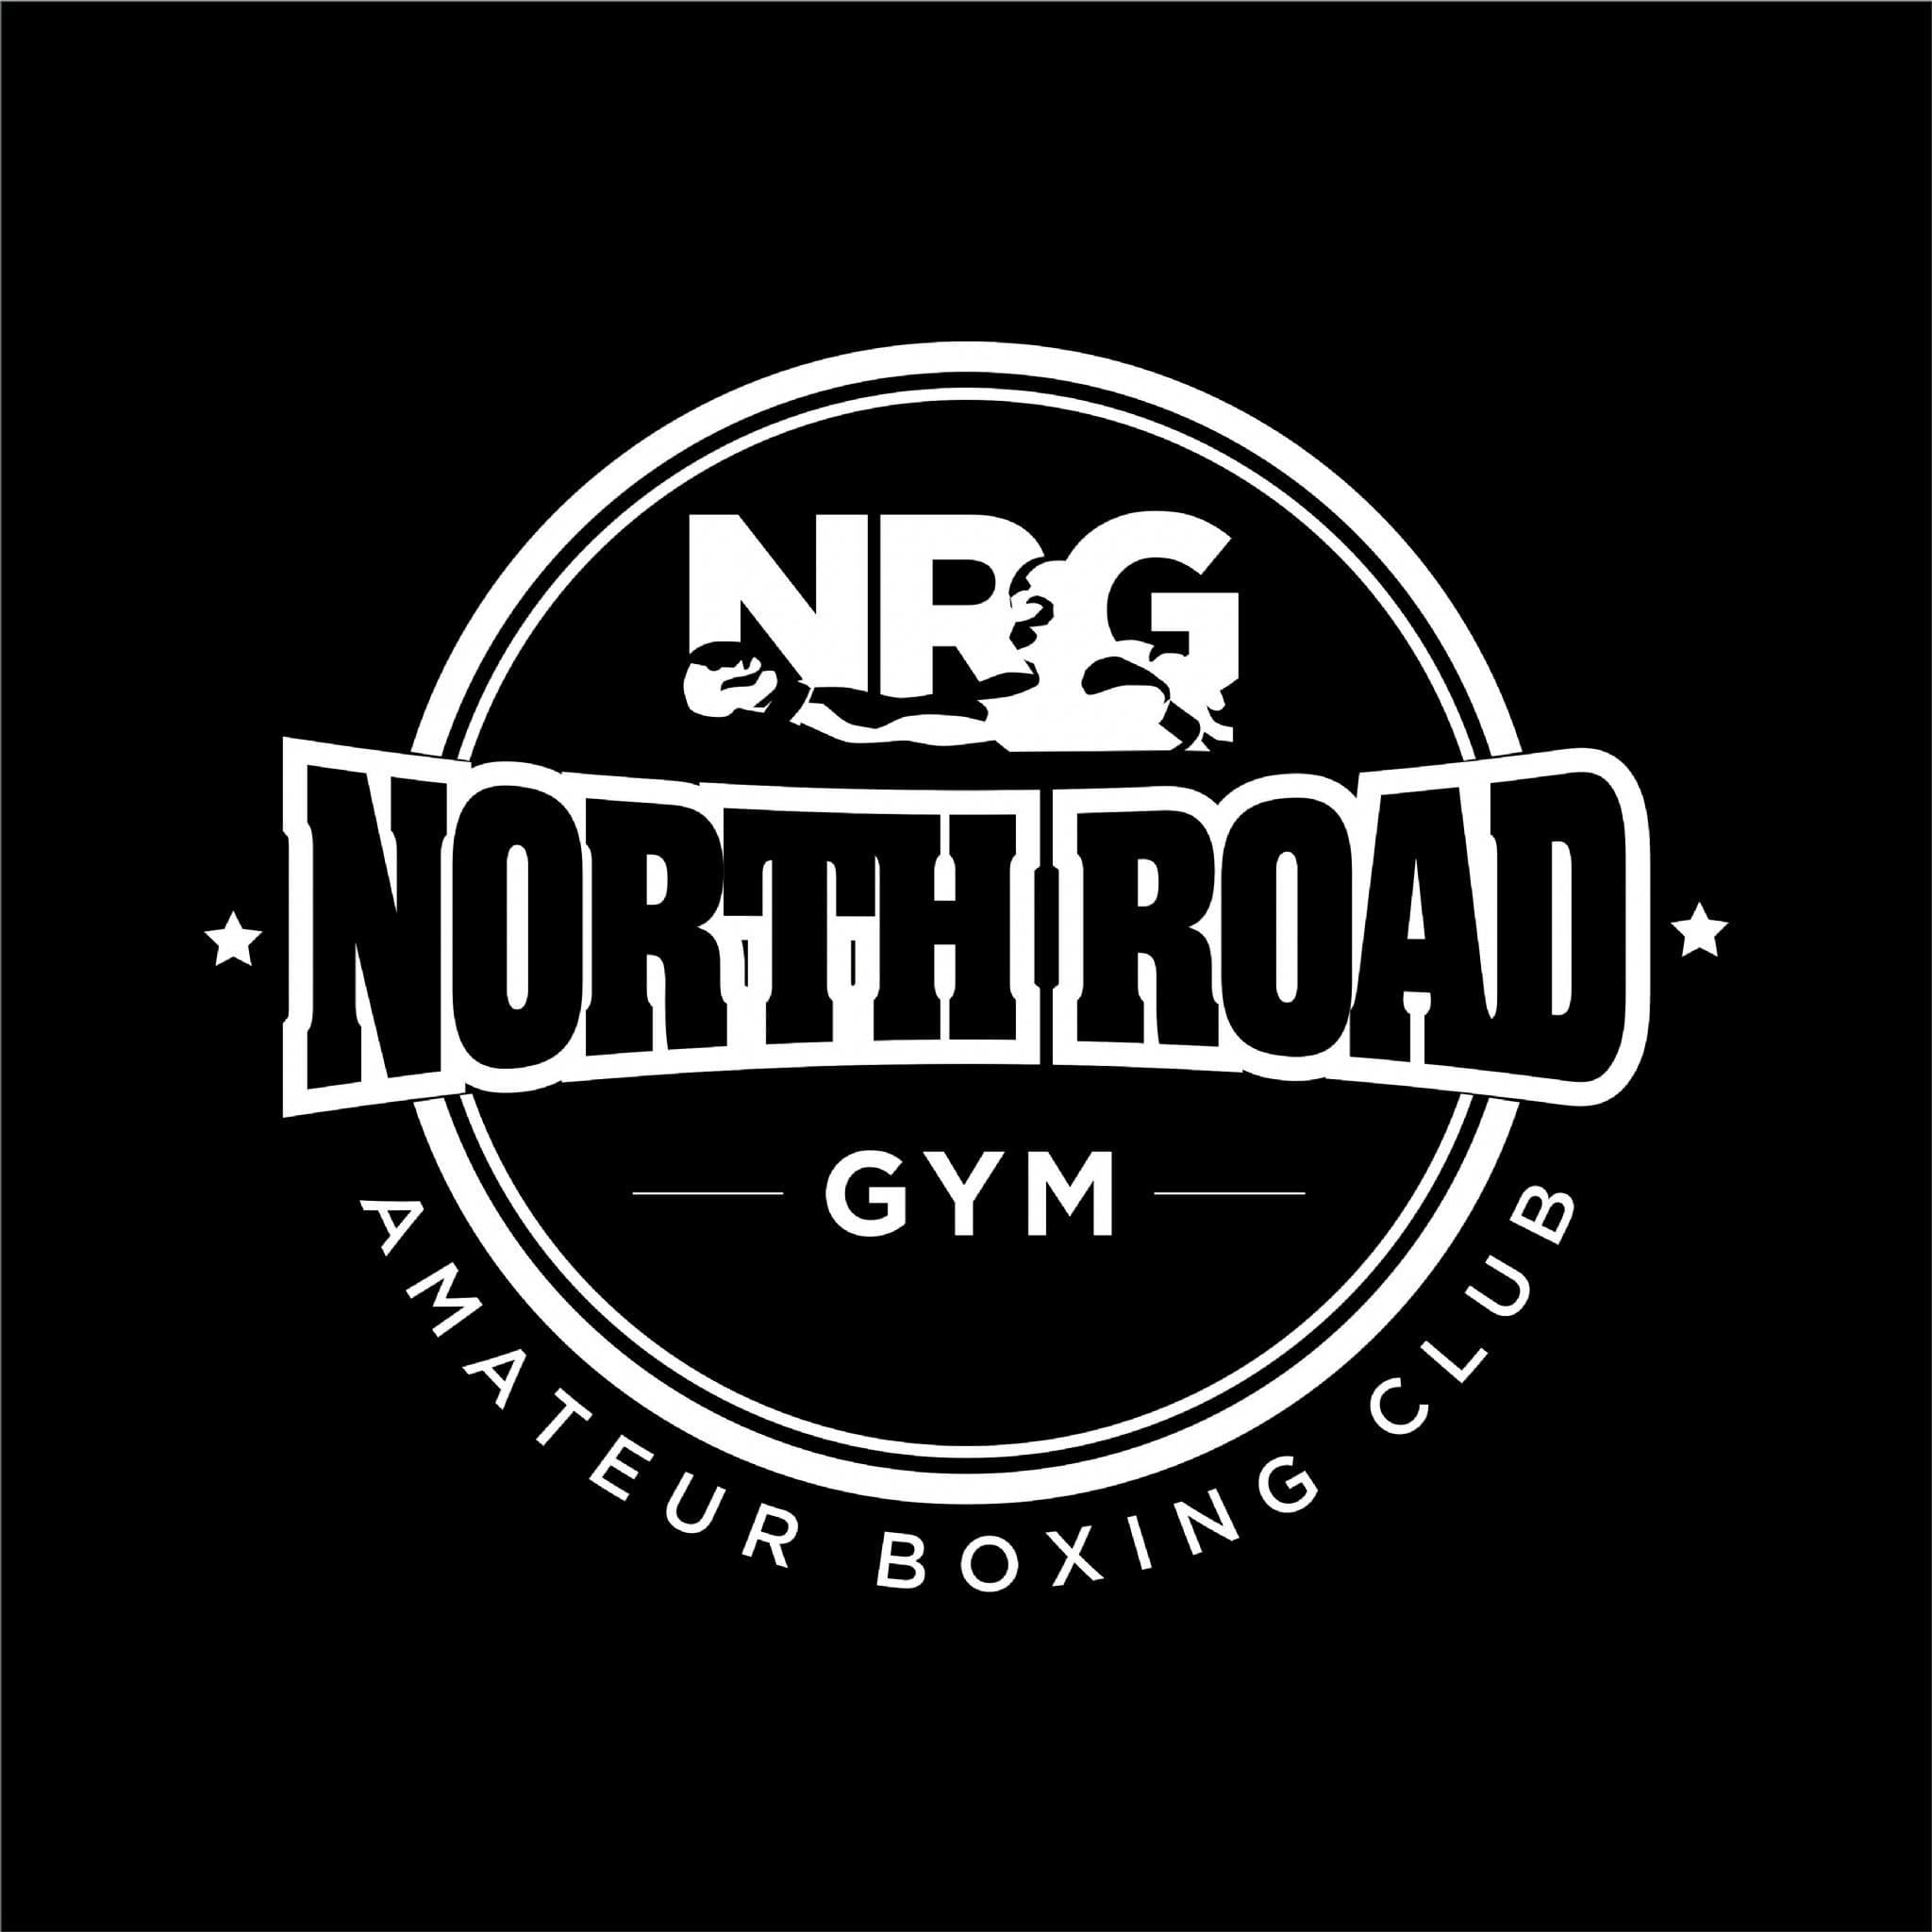 NRG North Road Gym